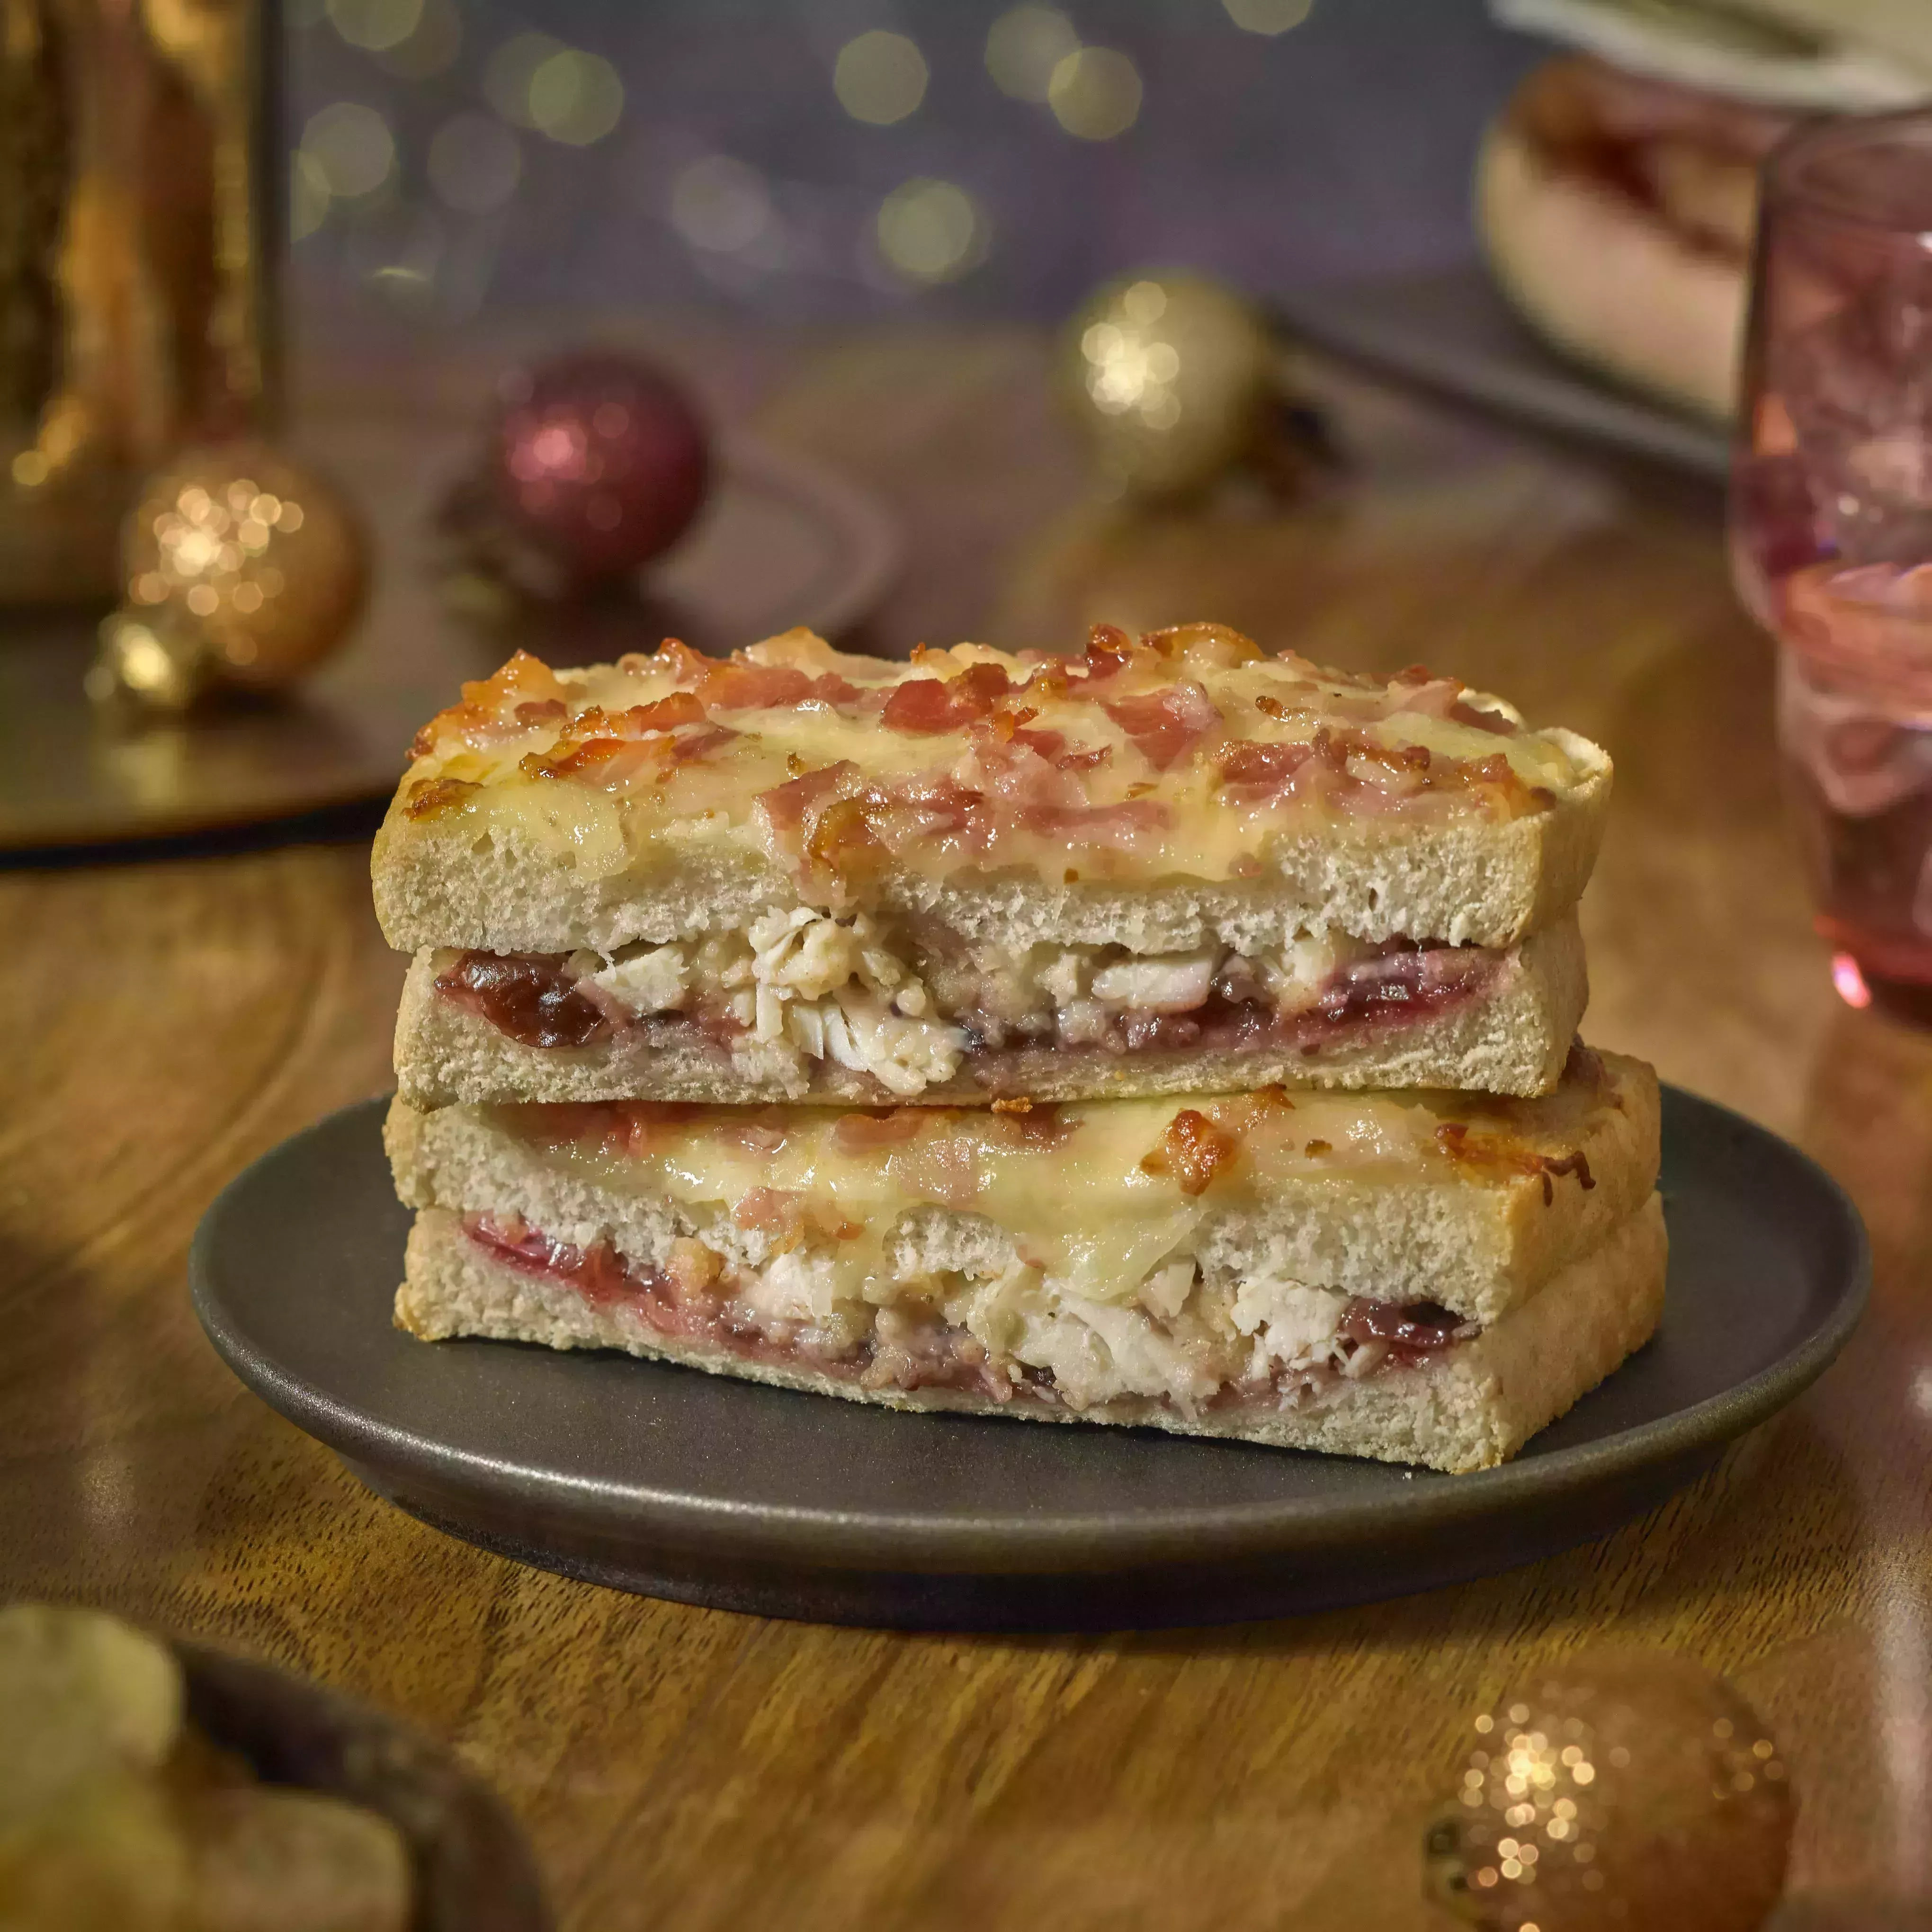 La nueva gama de sándwiches navideños de Aldi incluye 8 rellenos y un giro genial a uno de los favoritos de las fiestas